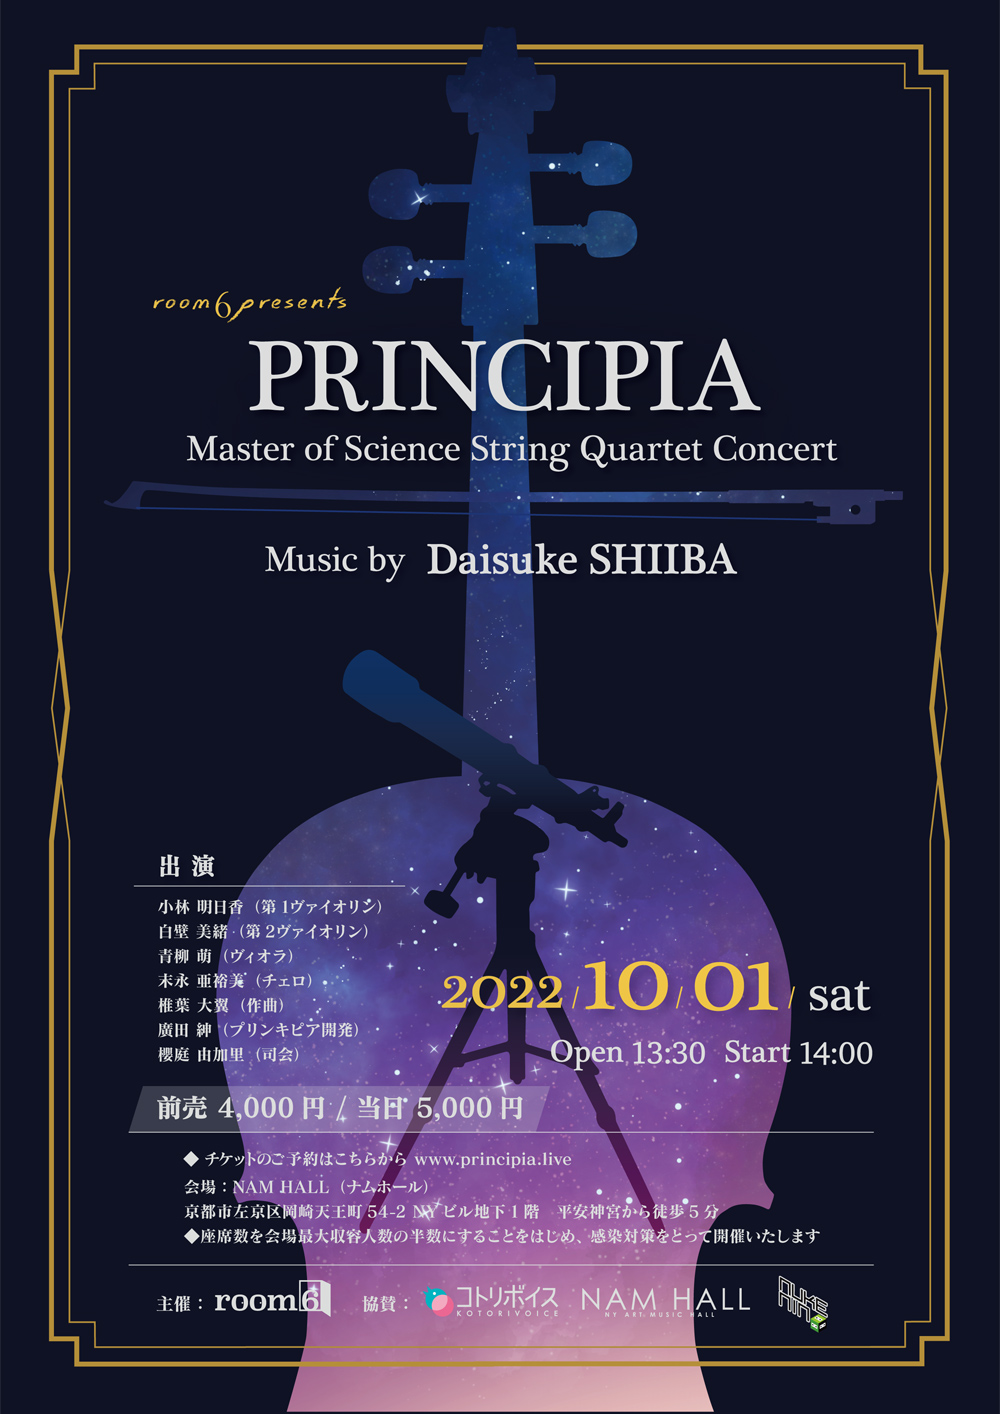 フライヤー:2022年10月1日（土） room6 presents PRINCIPIA: Master of Science String Quartet Concert
-Music by Daisuke SHIIBA-